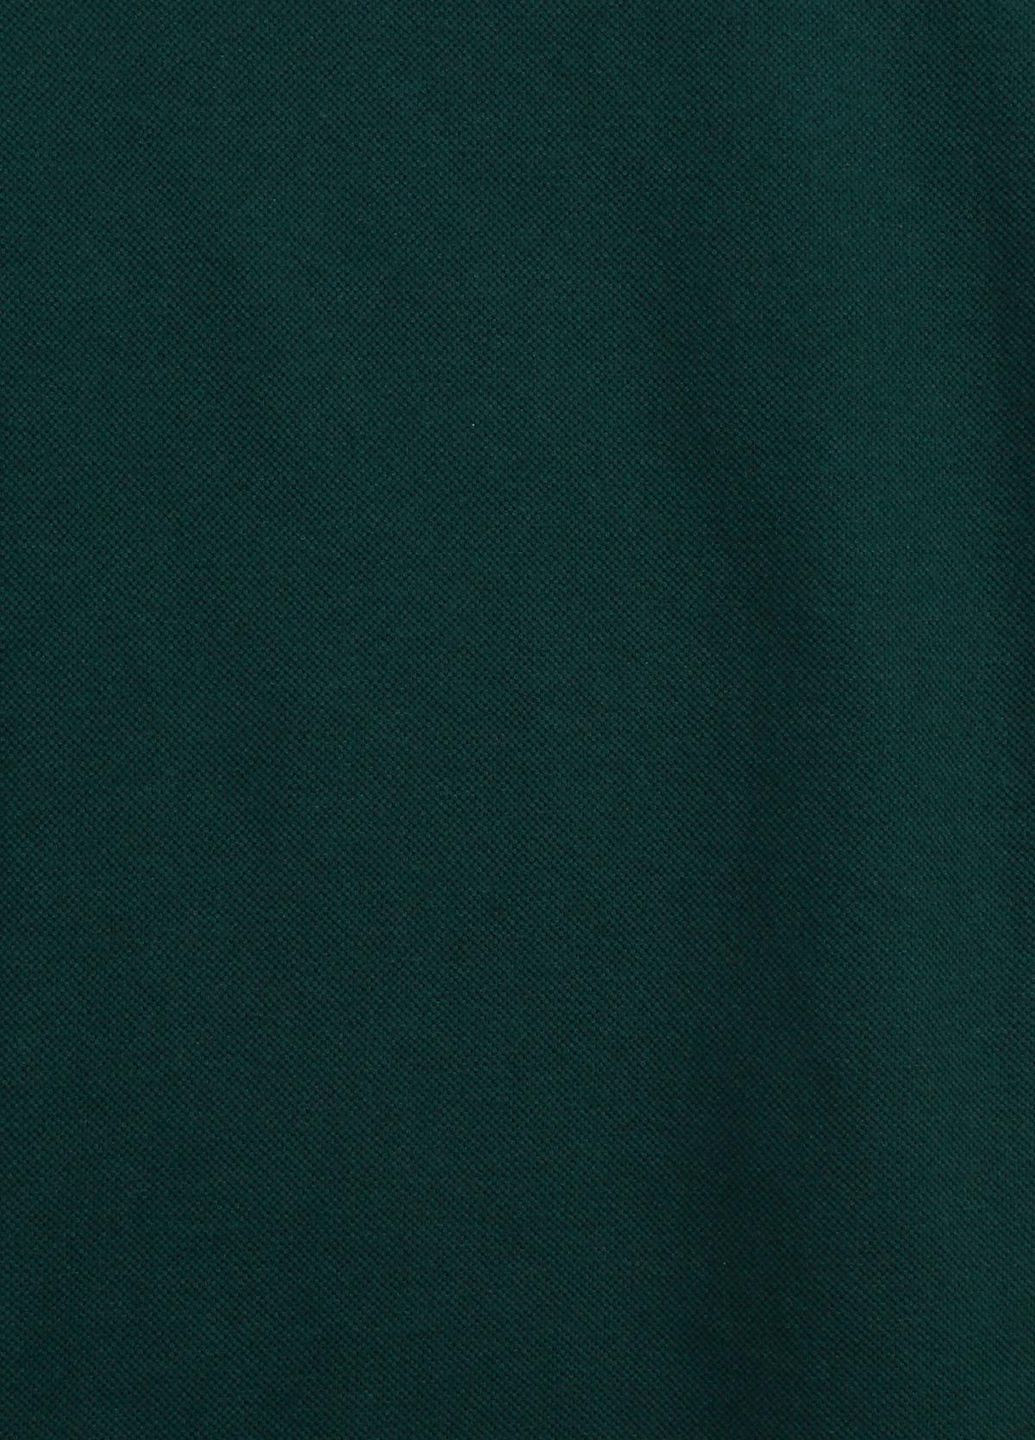 Зелена футболка Bellezza